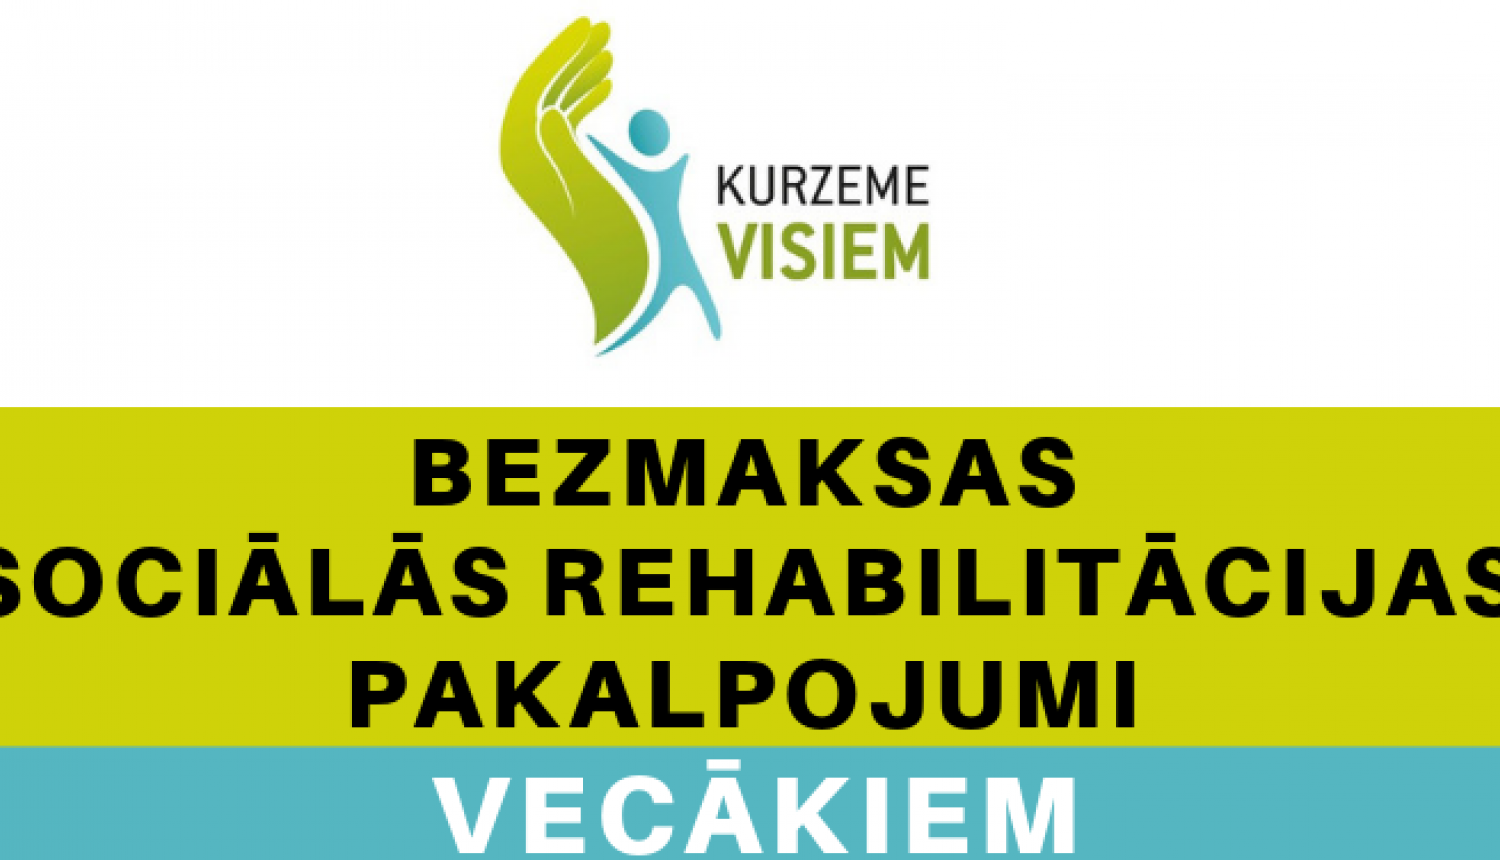 Projektā “Kurzeme visiem” izvērtētajiem bērniem – vēl vairāk sociālās rehabilitācijas pakalpojumu